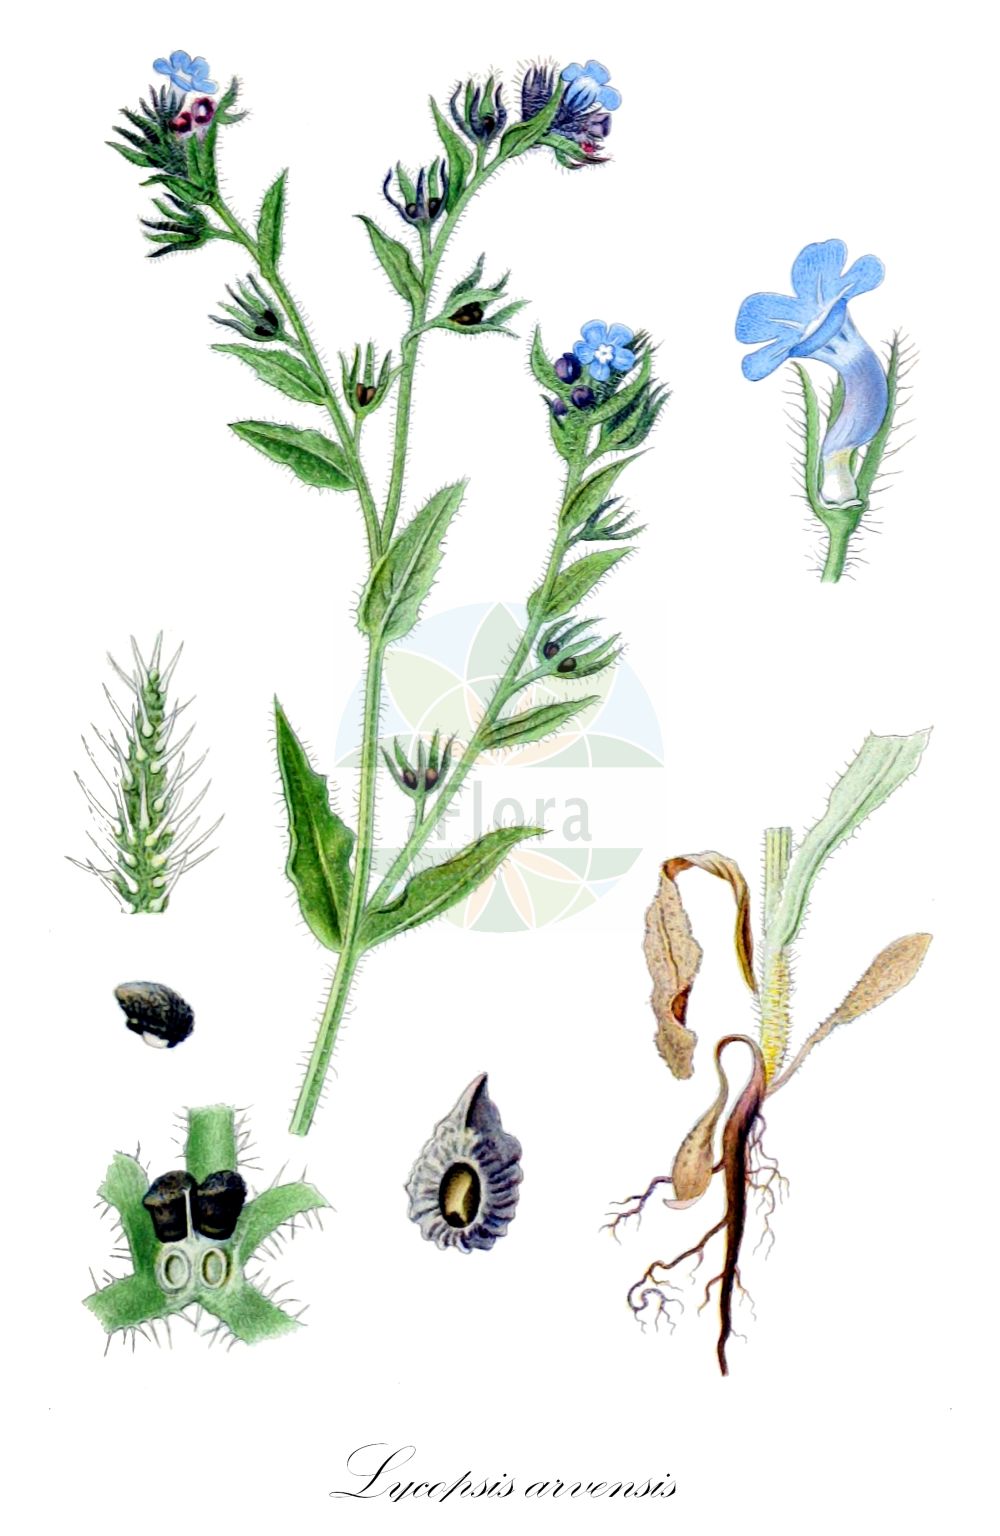 Historische Abbildung von Lycopsis arvensis (Acker-Krummhals - Bugloss). Das Bild zeigt Blatt, Bluete, Frucht und Same. ---- Historical Drawing of Lycopsis arvensis (Acker-Krummhals - Bugloss). The image is showing leaf, flower, fruit and seed.(Lycopsis arvensis,Acker-Krummhals,Bugloss,Anchusa arvensis,Anchusa guculeacii,Anchusa rigolei,Lycopsis arvensis,Lycopsis arvensis subsp. occidentalis,Acker-Krummhals,Bugloss,Common Bugloss,Small Bugloss,Wild Bugloss,Lycopsis,Boraginaceae,Raublattgewächse,Forget-me-Not family,Blatt,Bluete,Frucht,Same,leaf,flower,fruit,seed,Lindman (1901-1905))